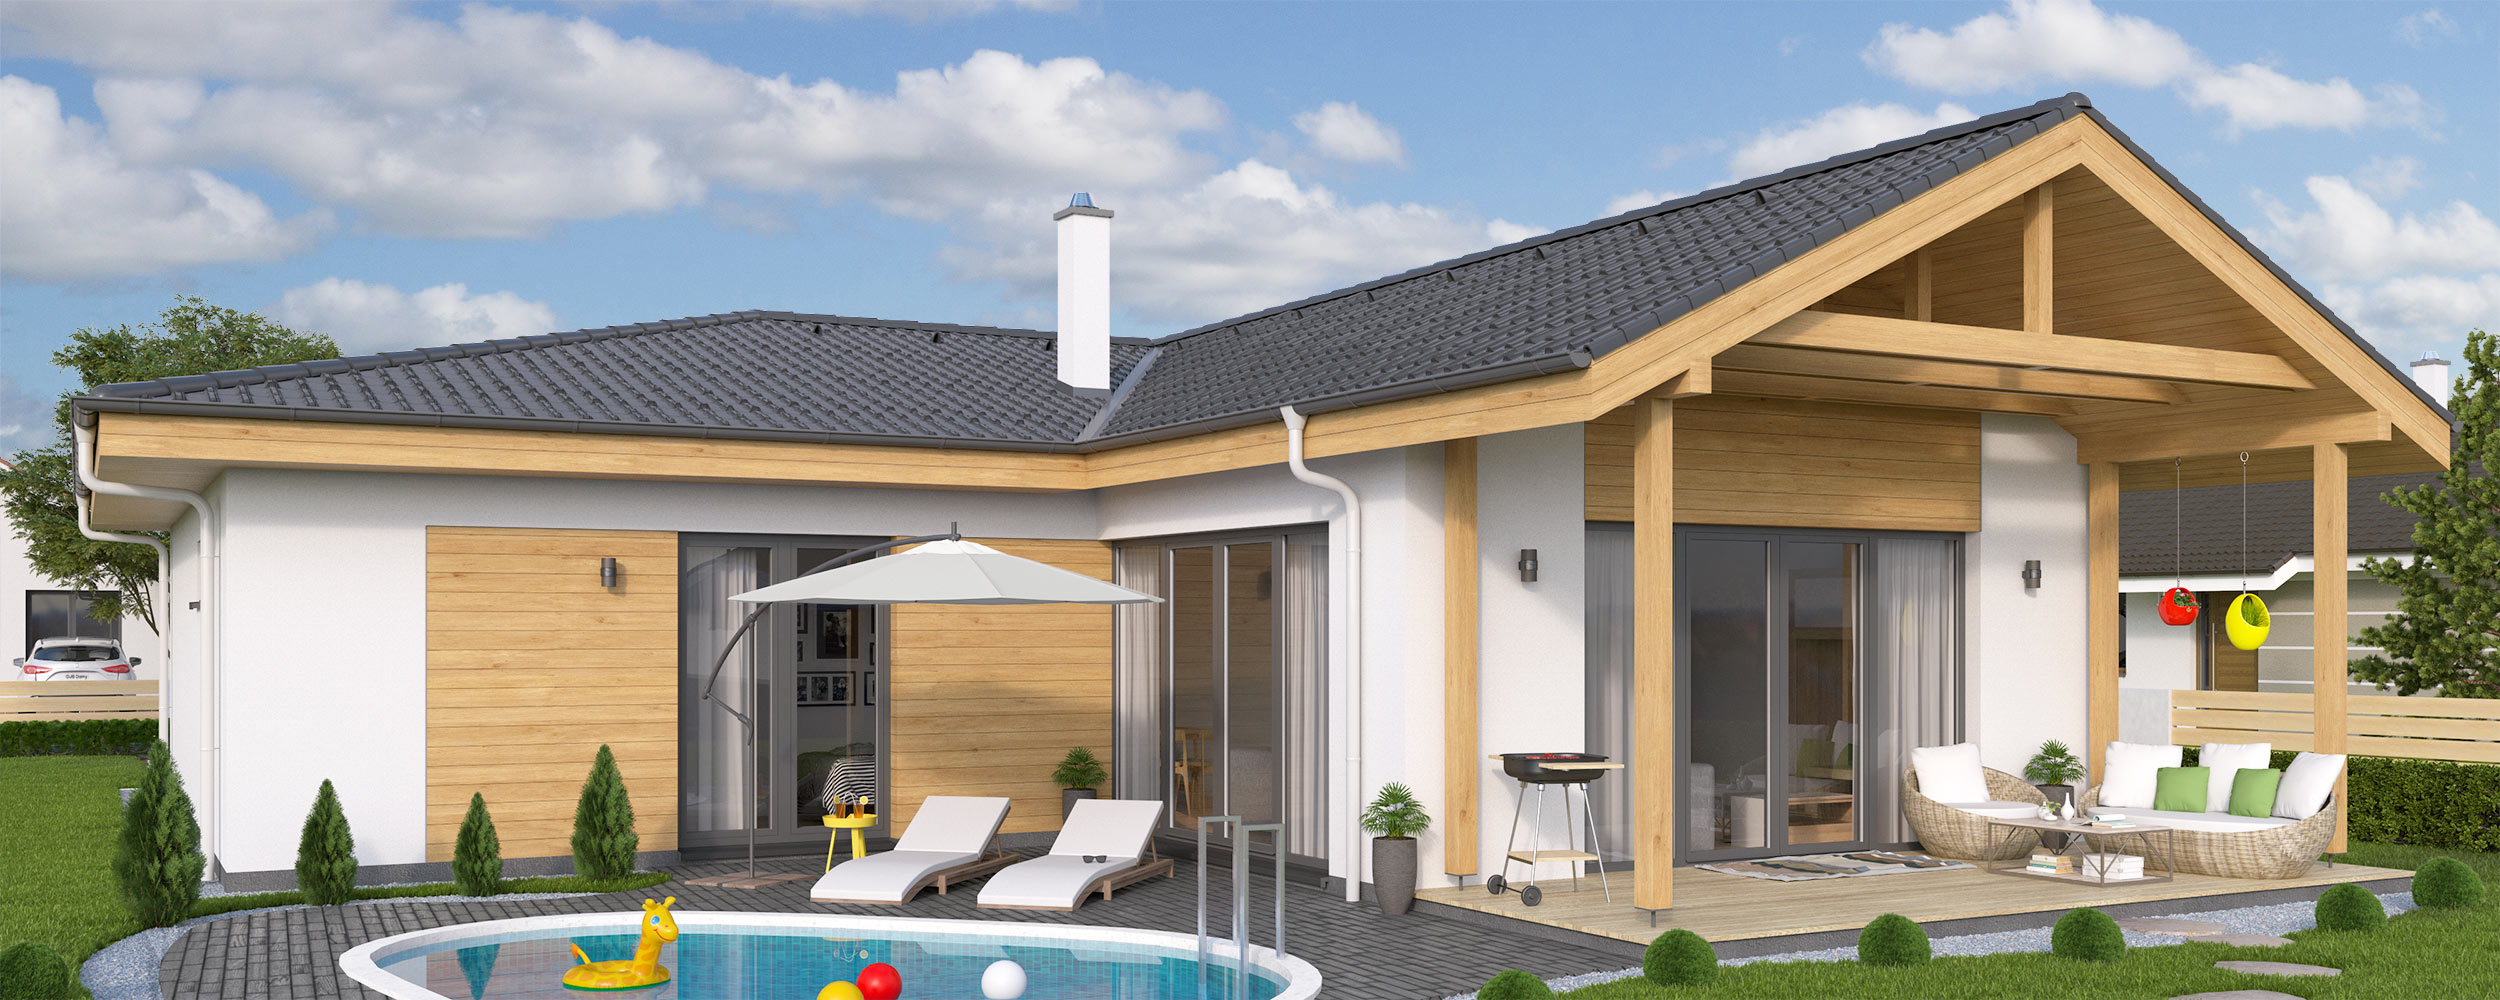 Plan of L shaped house - bungalow L135 | DJS Architecture